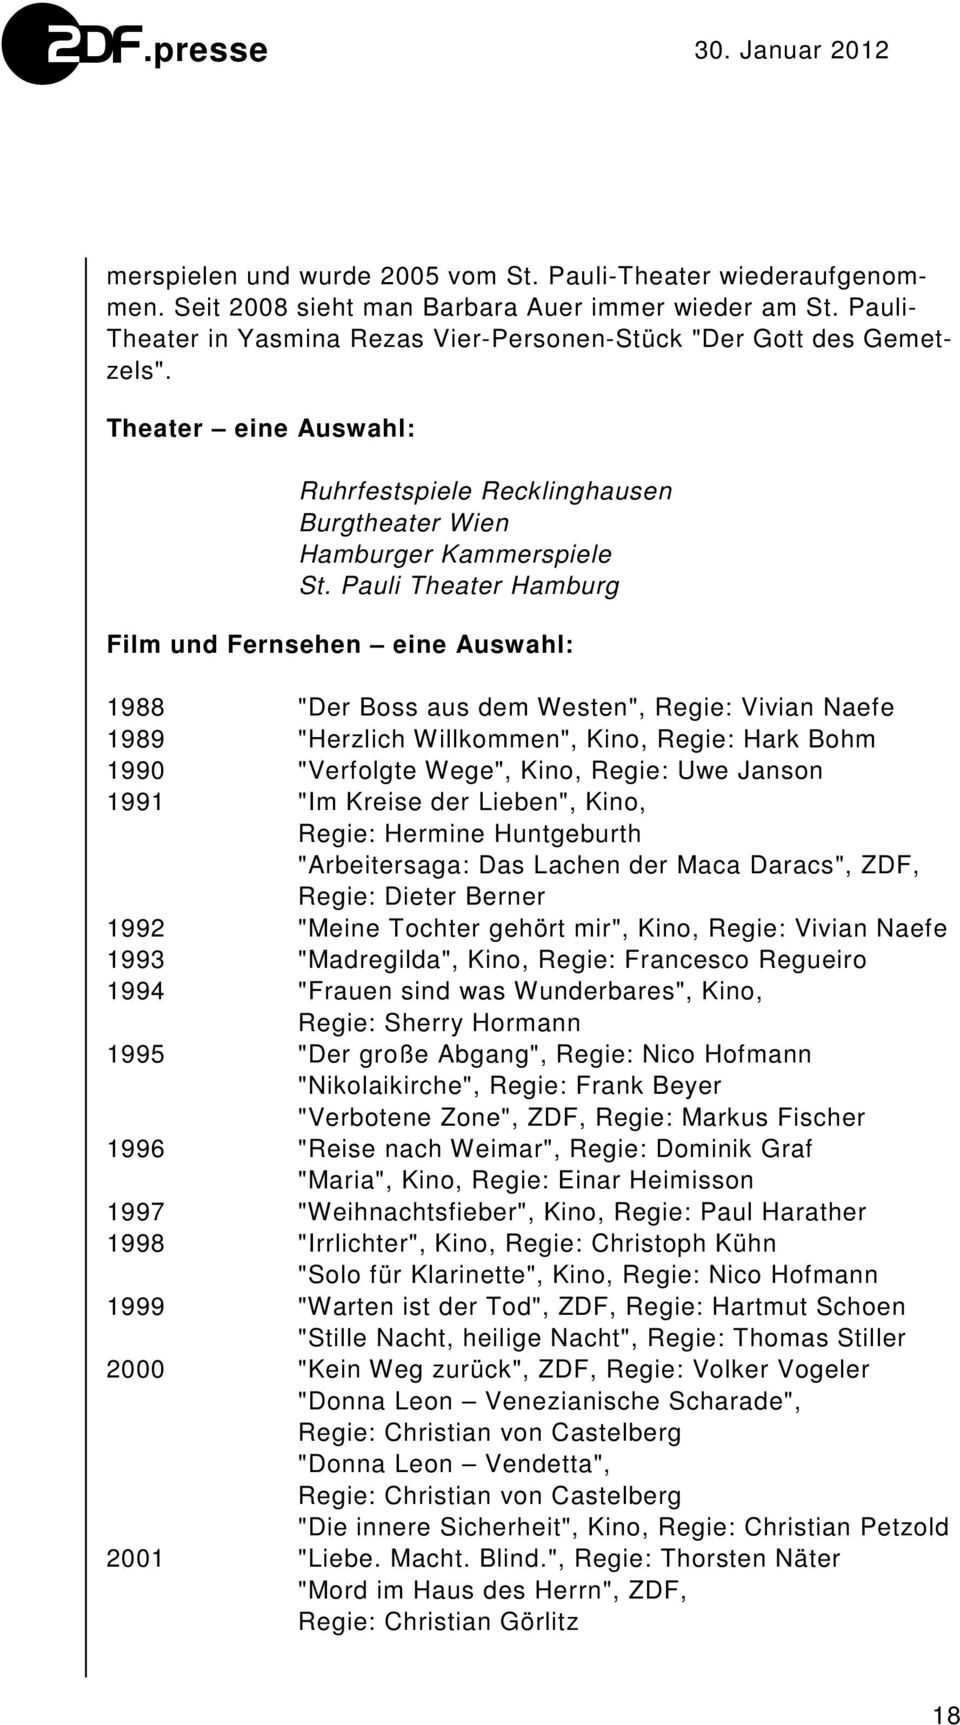 Pauli Theater Hamburg Film und Fernsehen eine Auswahl: 1988 "Der Boss aus dem Westen", Regie: Vivian Naefe 1989 "Herzlich Willkommen", Kino, Regie: Hark Bohm 1990 "Verfolgte Wege", Kino, Regie: Uwe